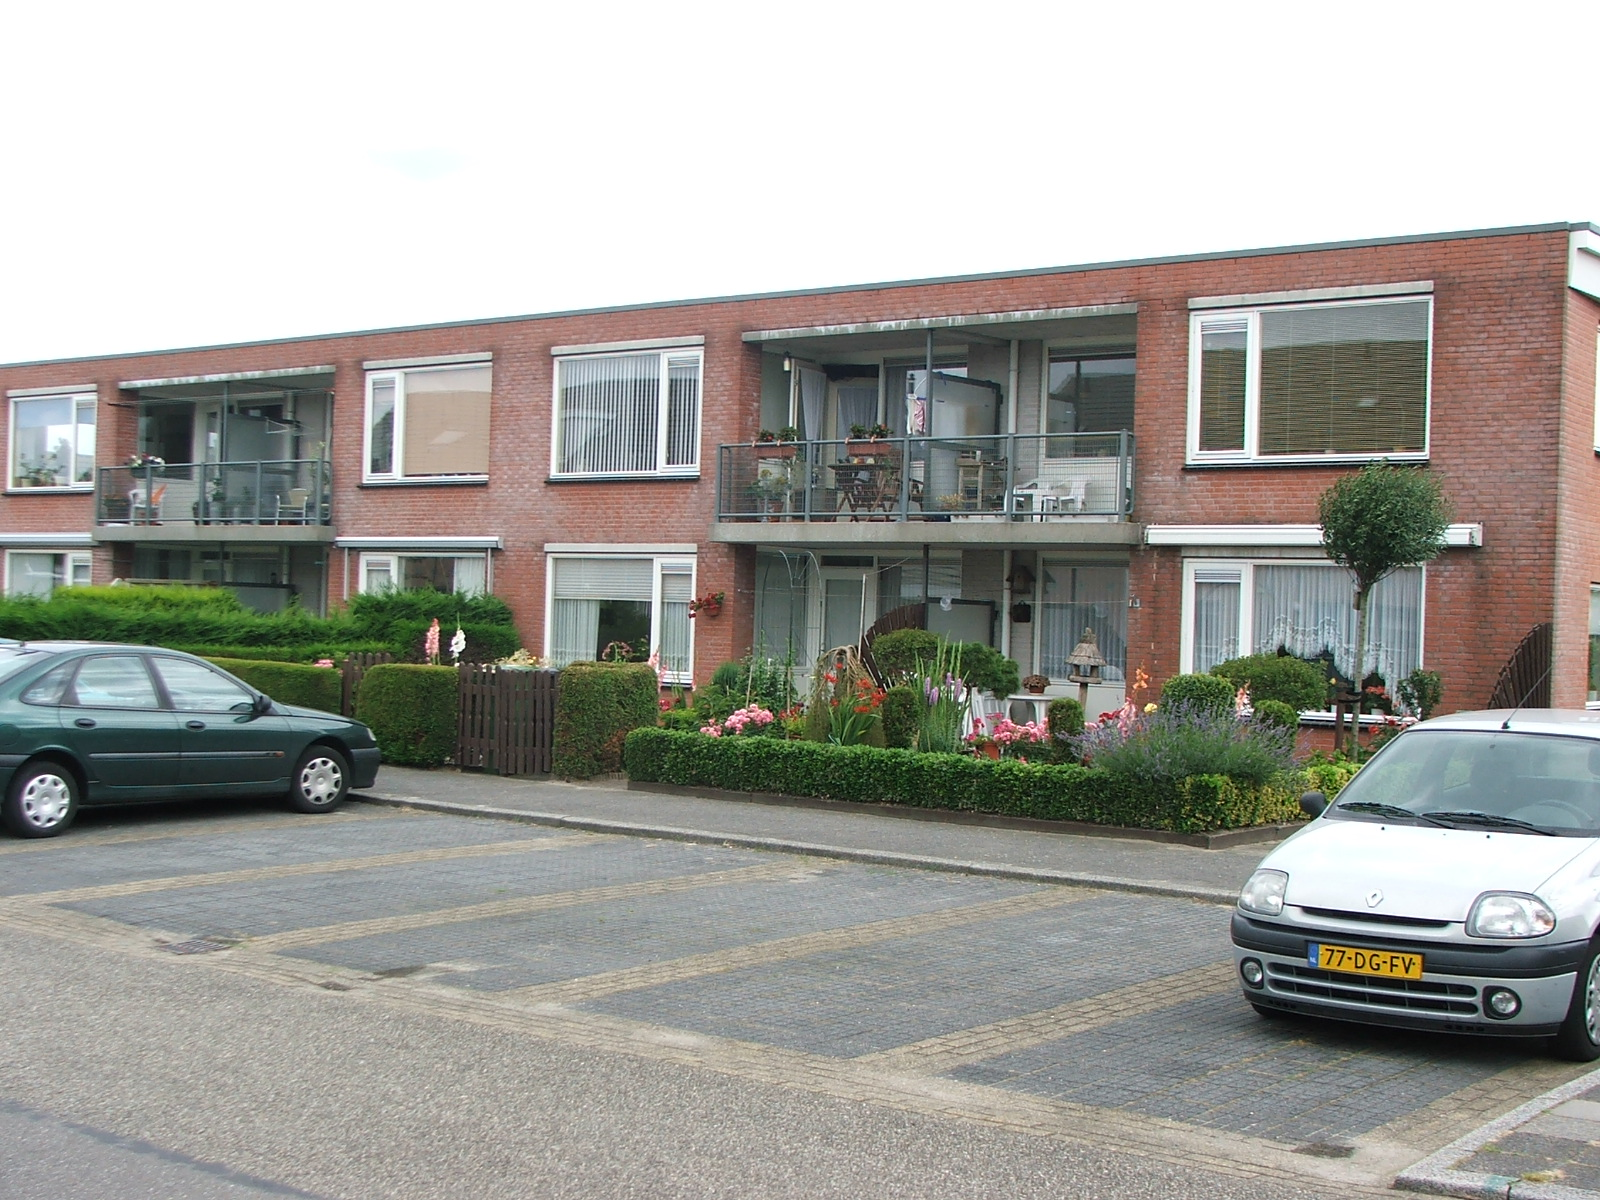 W. Ontzigtstraat 56, 2461 SK Ter Aar, Nederland